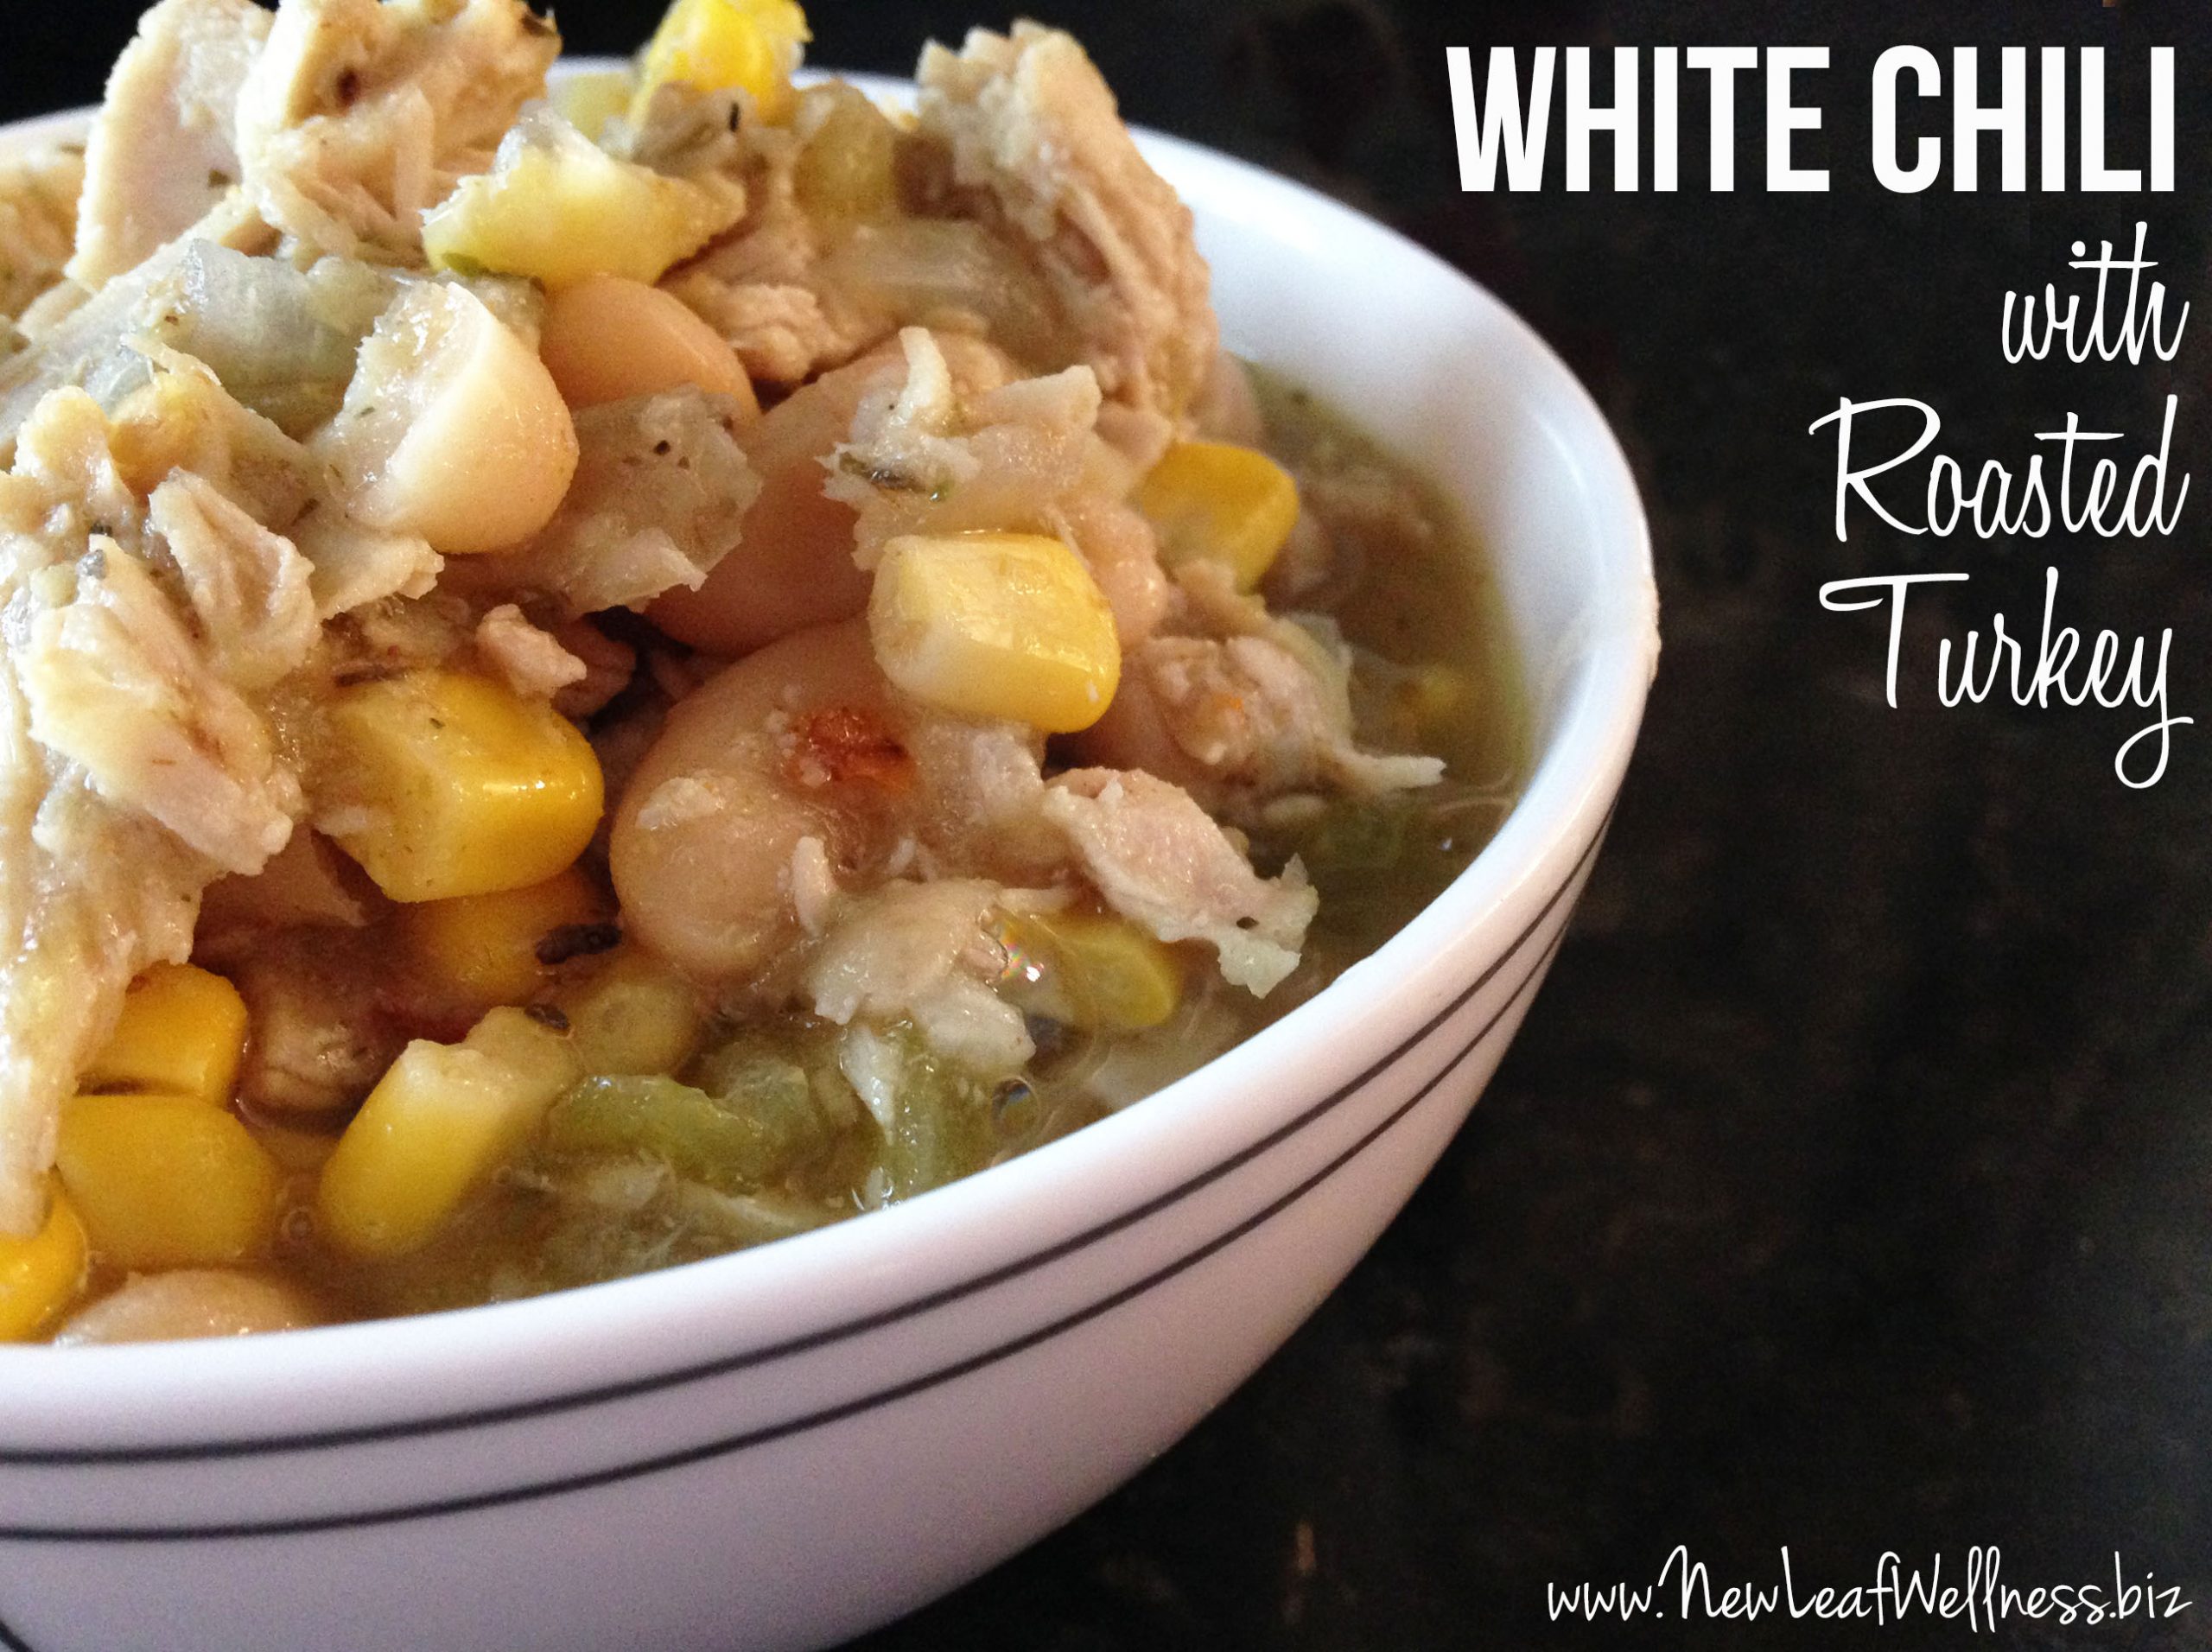 White Chili Recipe with Roasted Turkey